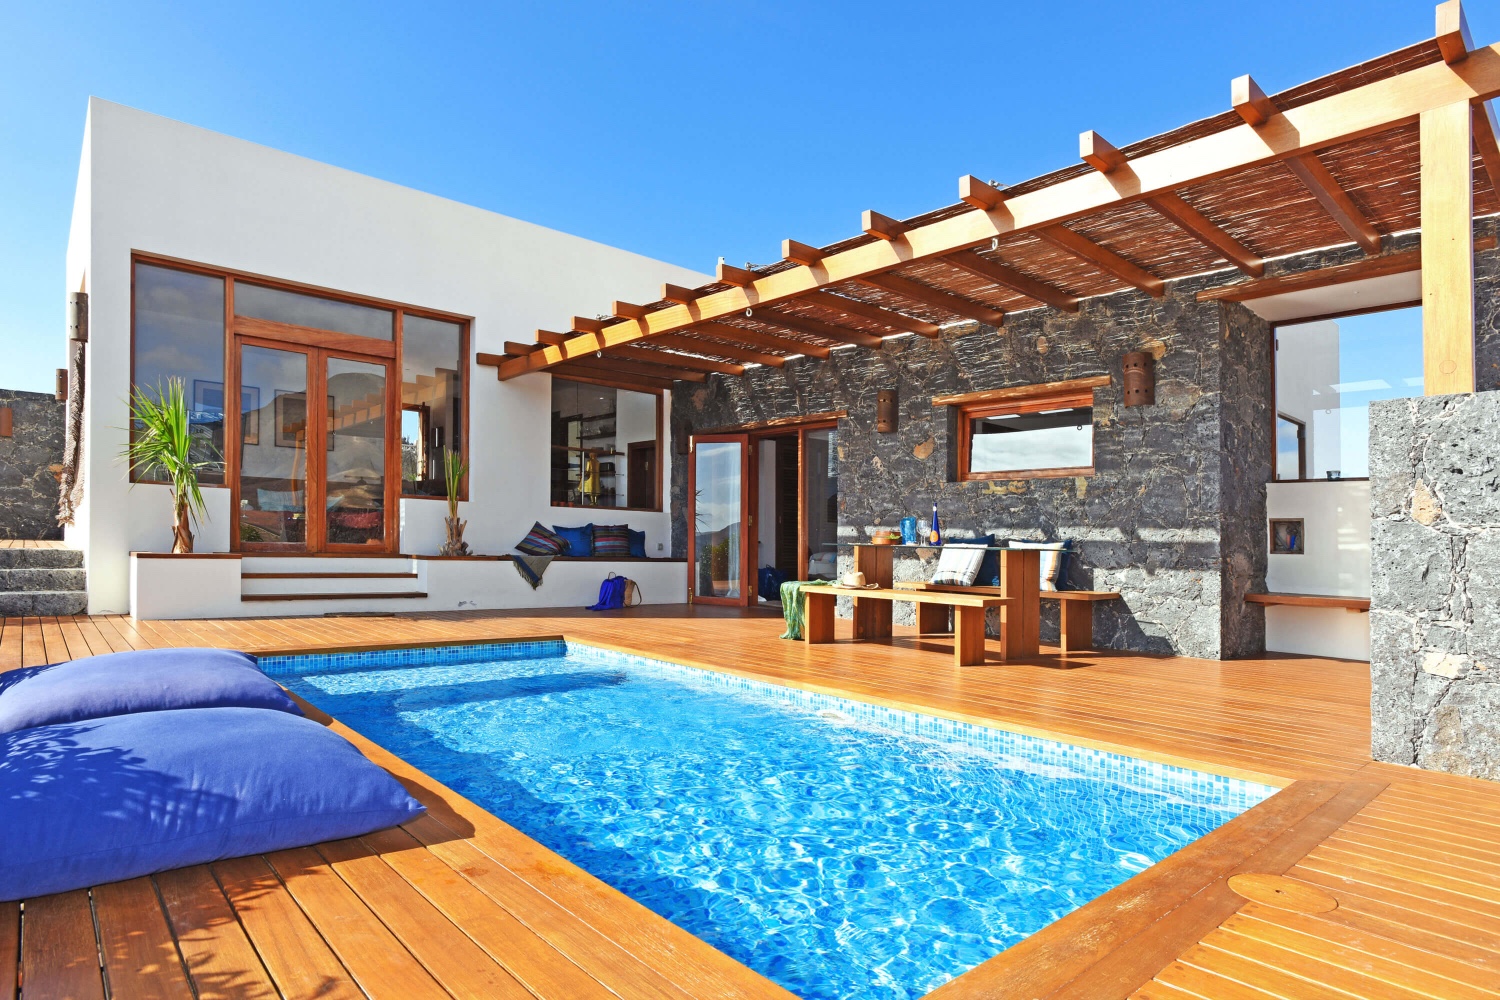 Casa de lujo con estilo, dos dormitorios, piscina privada y magníficas vistas al paisaje volcánico en una zona cerca de la playa en Pájara